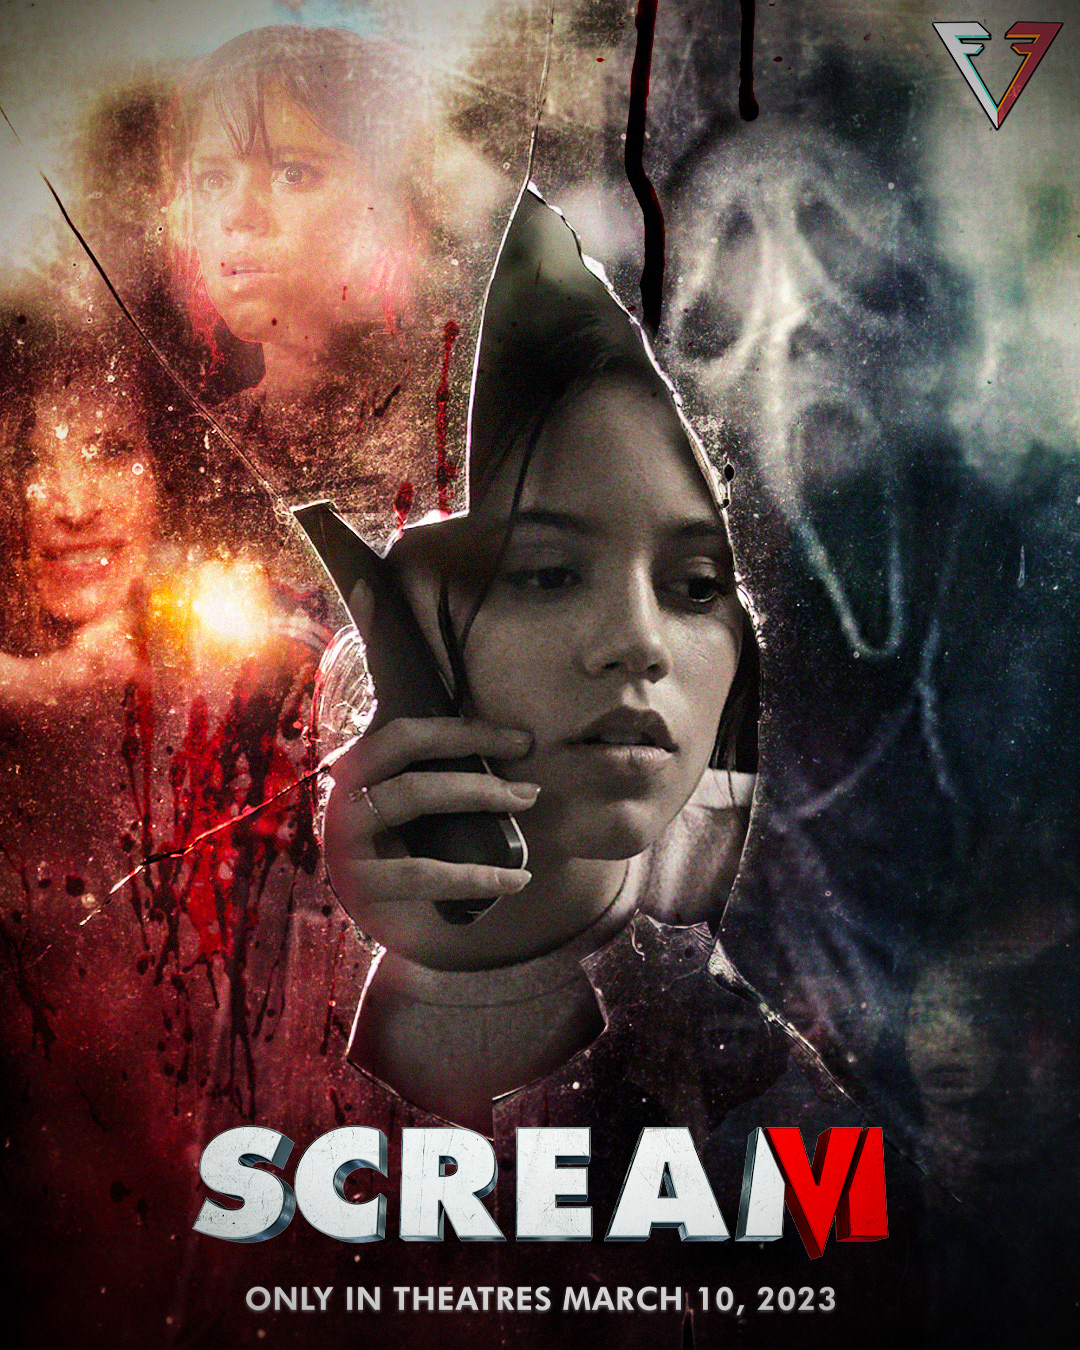 Scream 6 by Samuel Iniguez